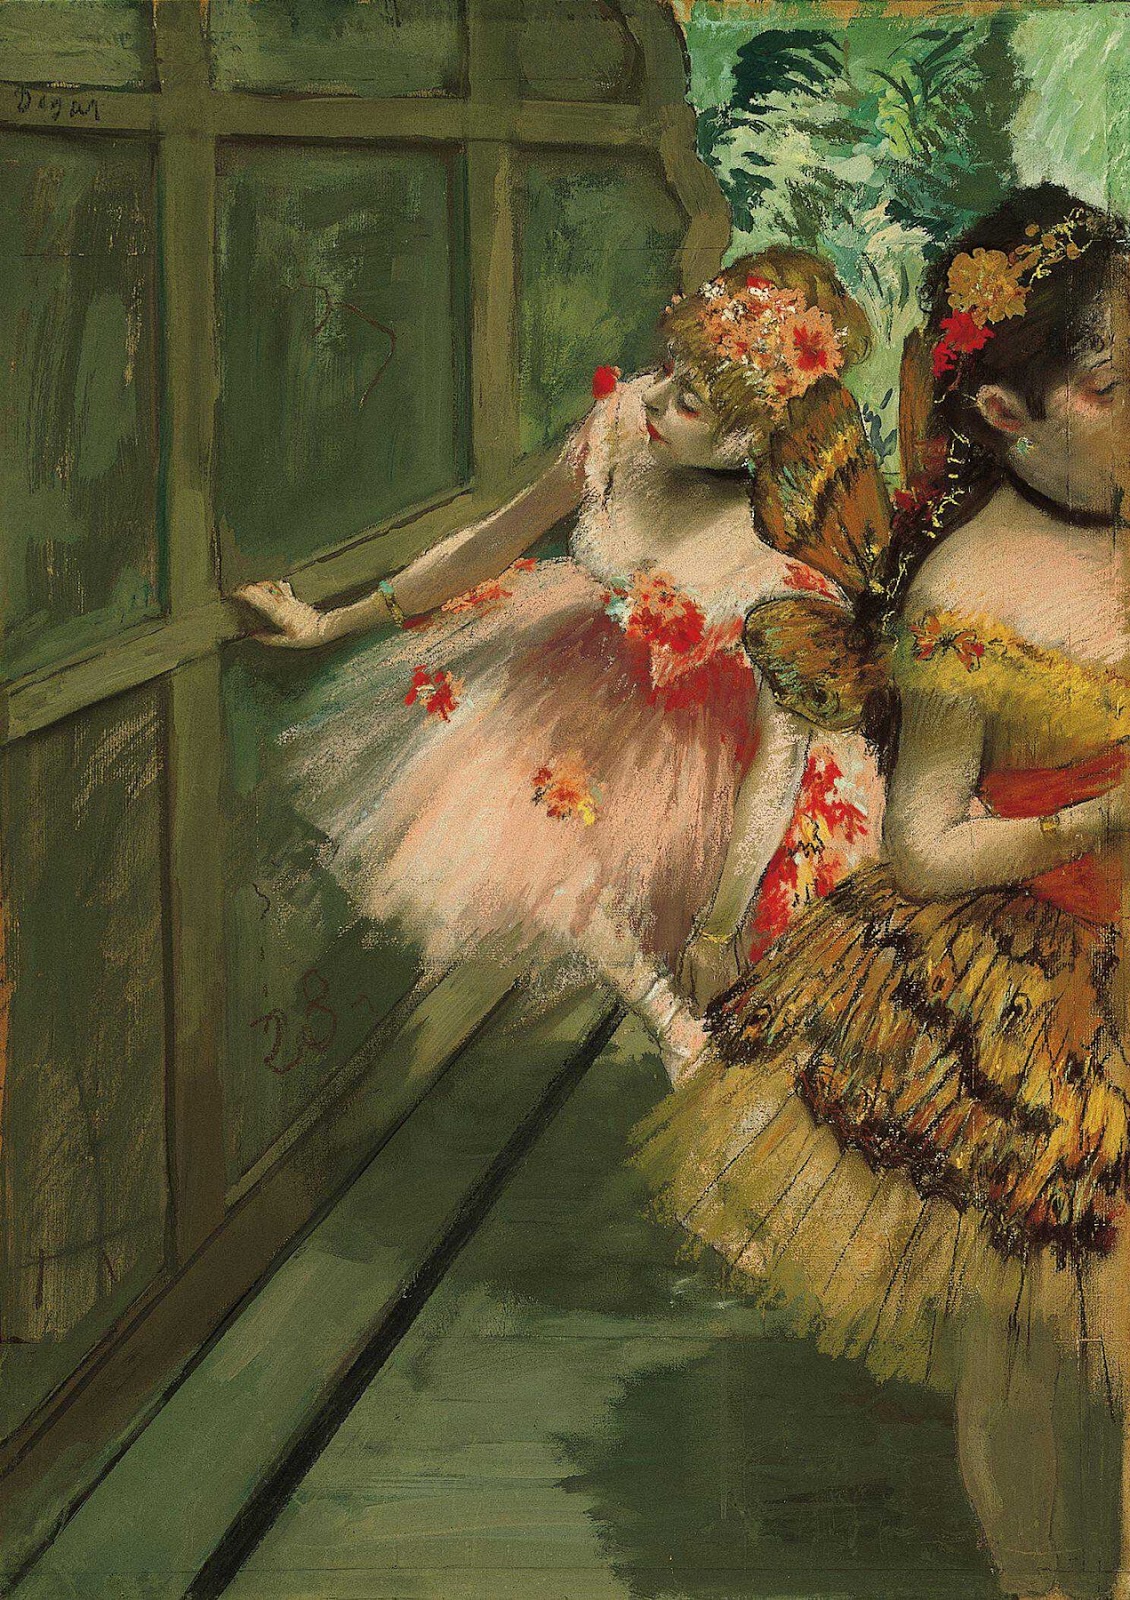 Táncosok a szárnyakban by Edgar Degas - 1876-1878 körül - 69,2 x 50,2 cm 